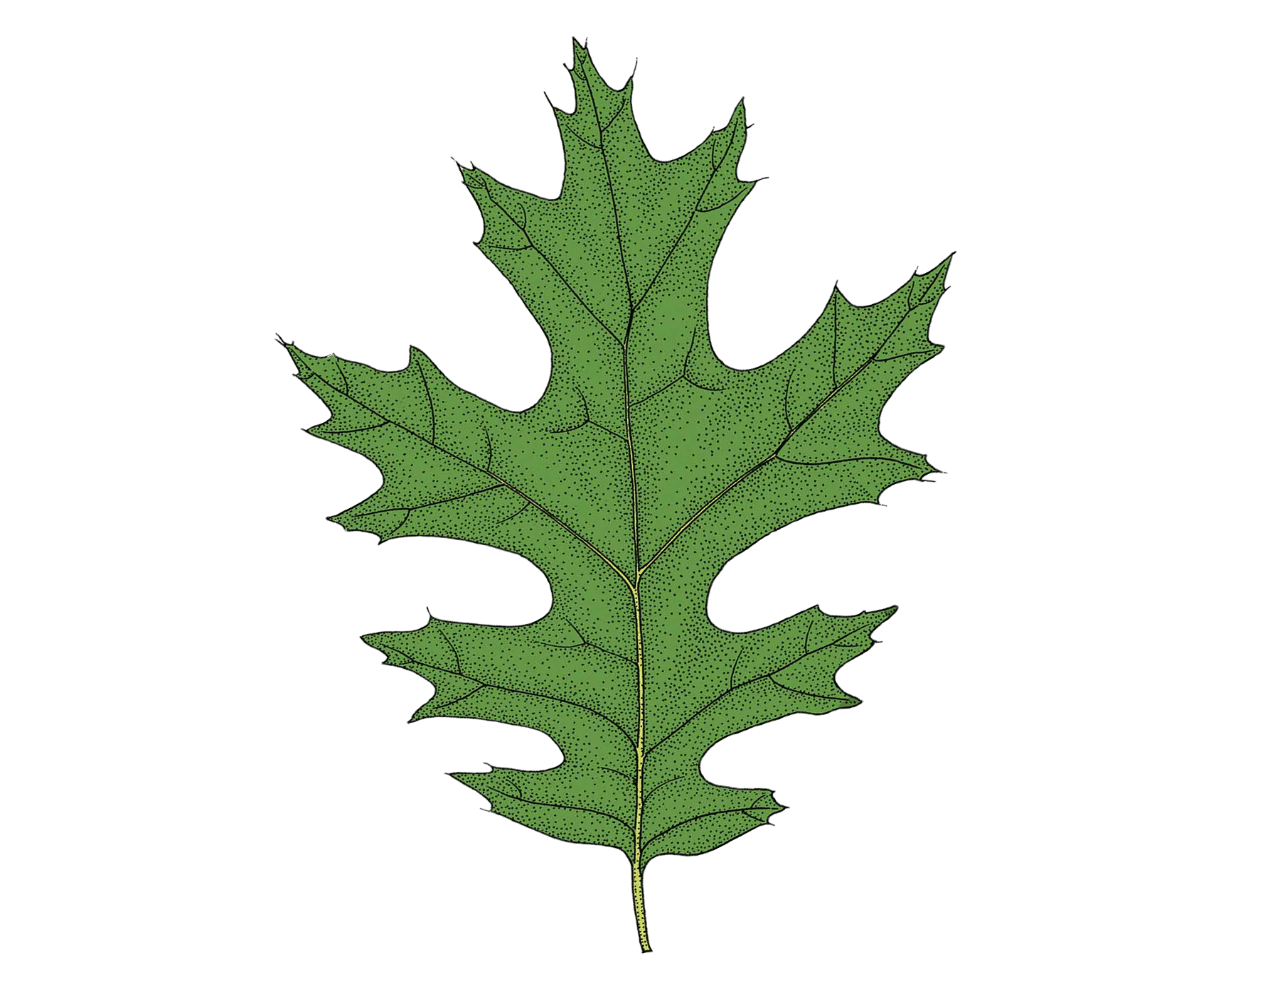 scarlet oak leaf